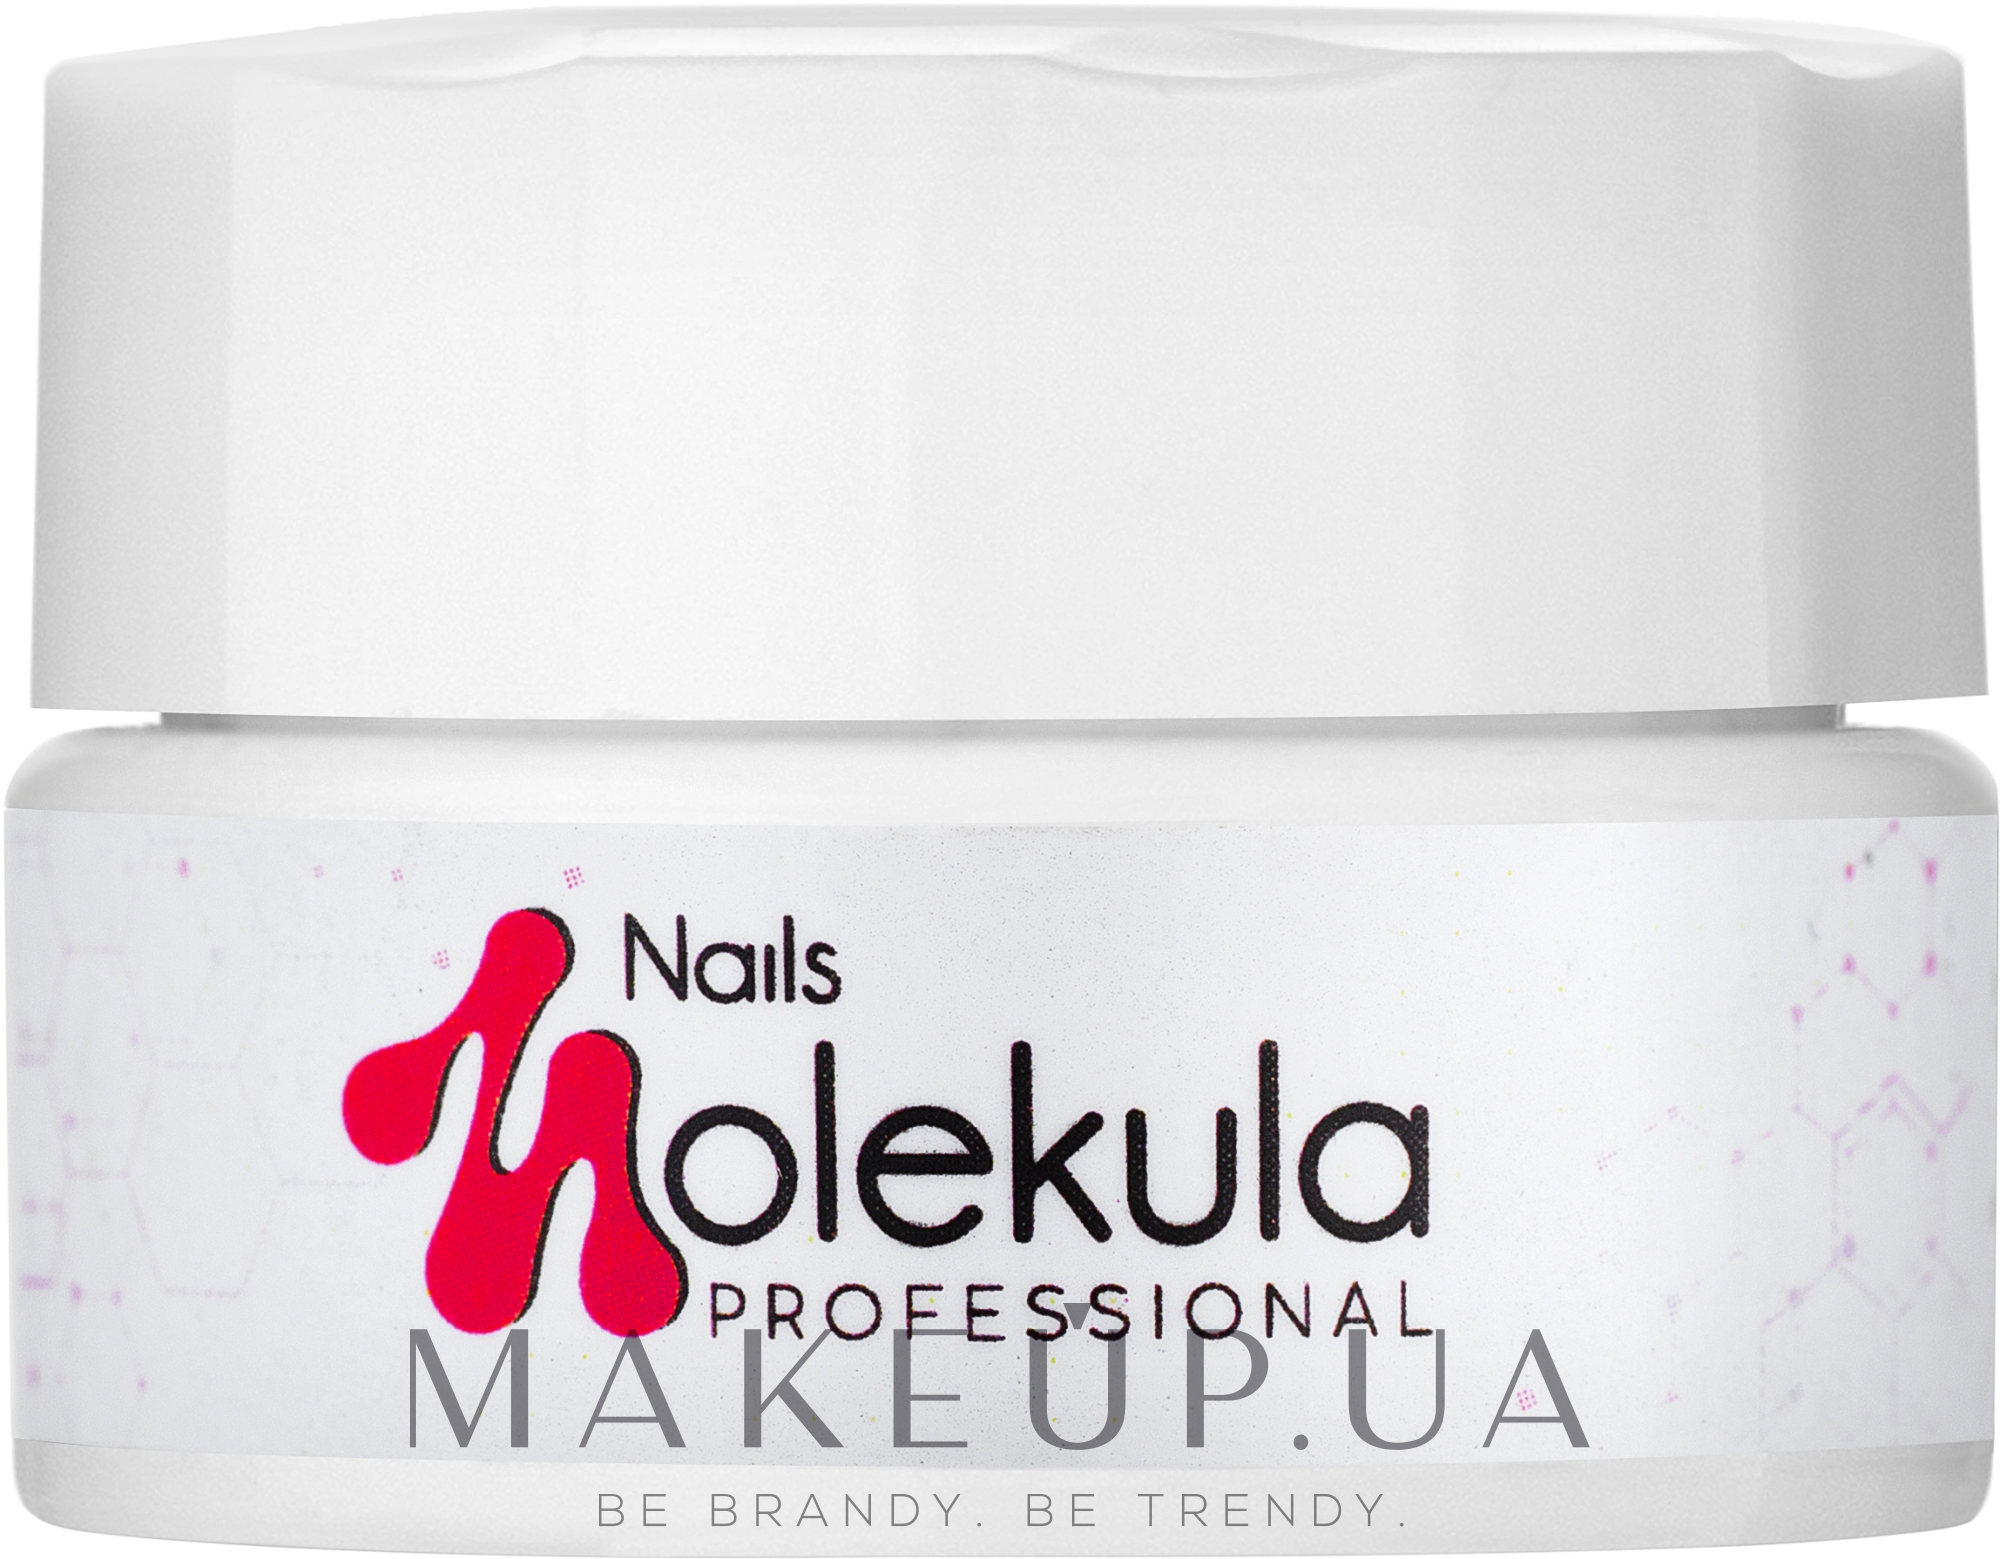 Nails Molekula Bio Gel - Био-гель для ногтей: купить по лучшей цене в  Украине | Makeup.ua